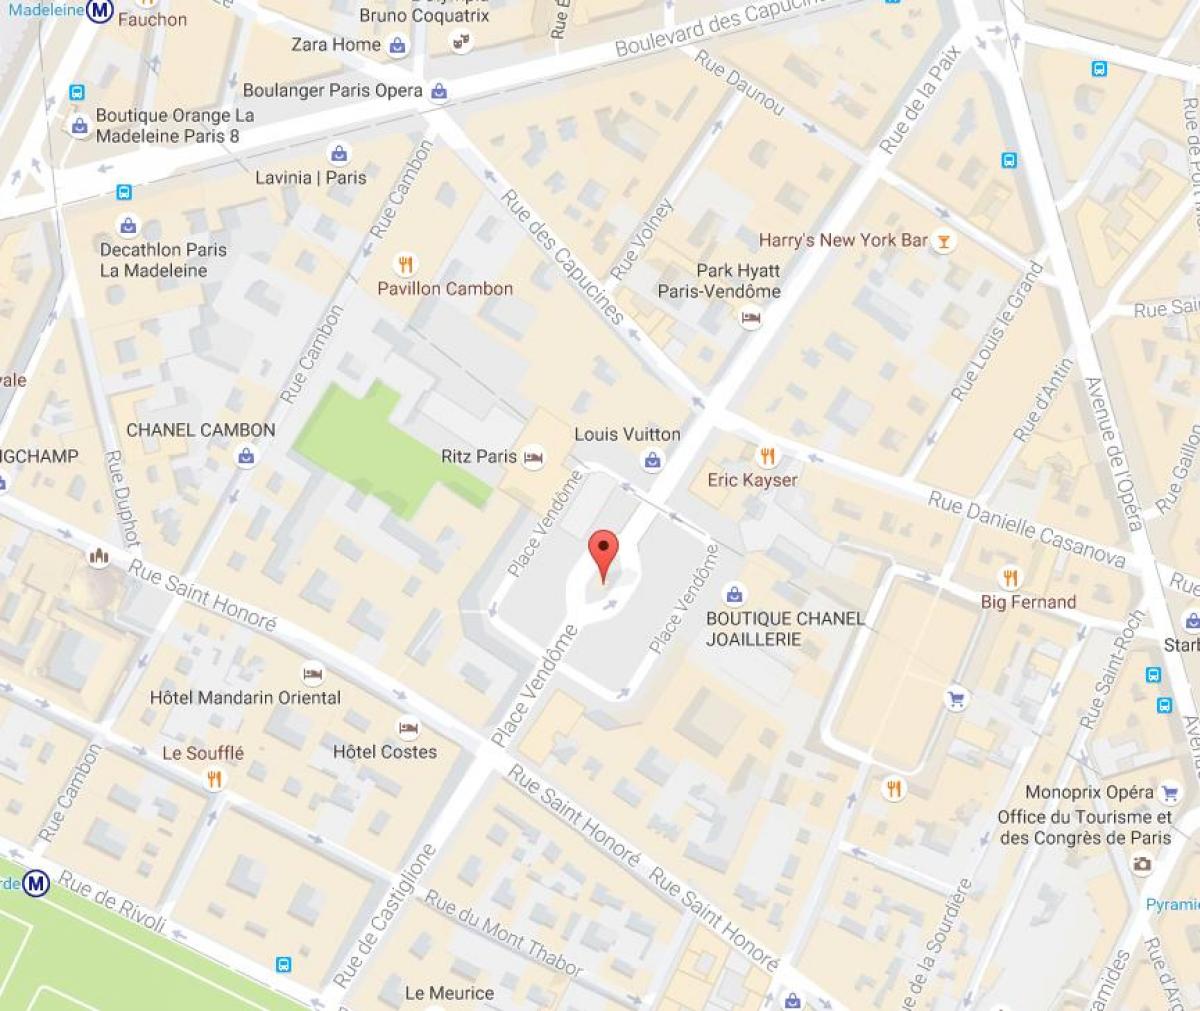 Χάρτης της Place Vendôme